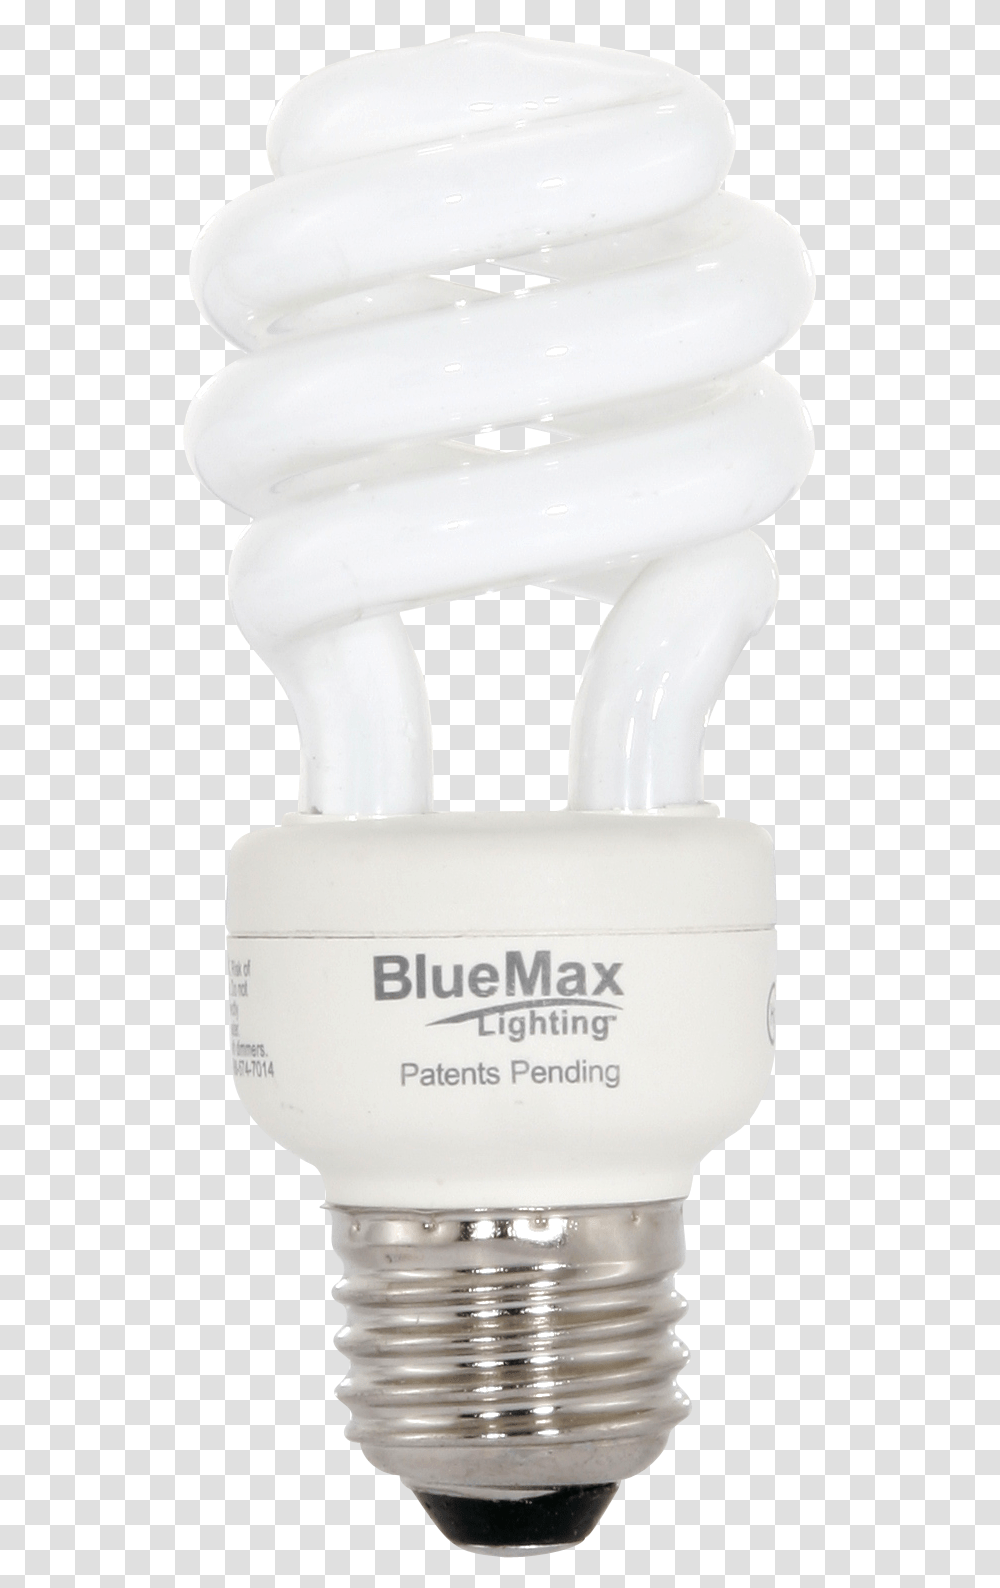 Cfl Bulb Fluorescent Lamp, Light, Lightbulb, Mixer, Appliance Transparent Png